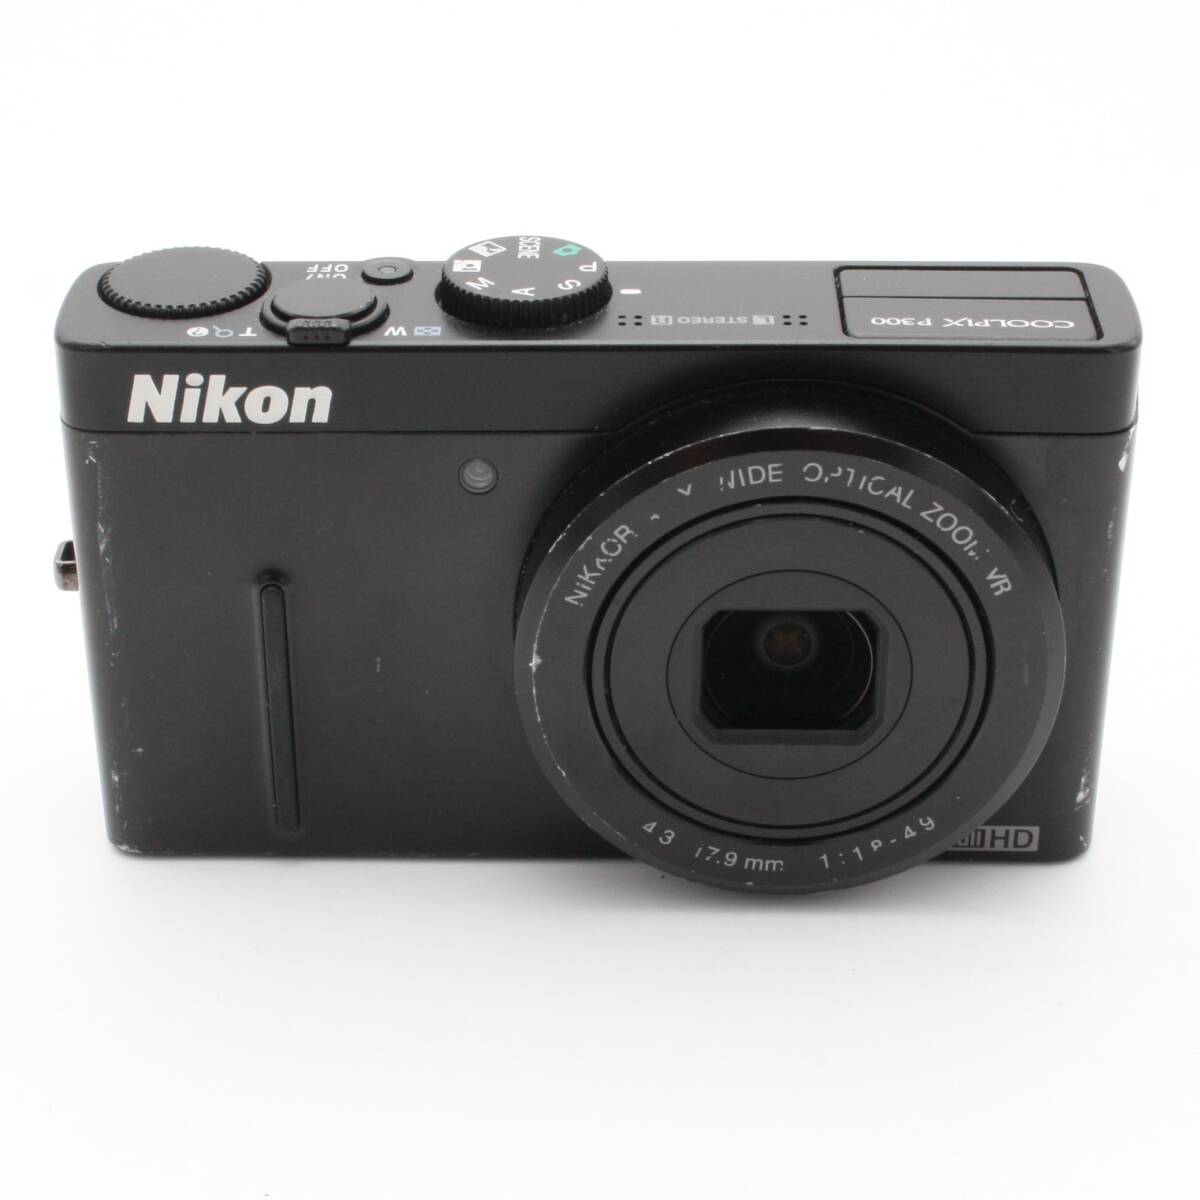 NikonデジタルカメラCOOLPIX P300 ブラックP300 1220万画素 裏面照射CMOS 広角24mm 光学4.2倍 F1.8レンズ フルHD_画像1